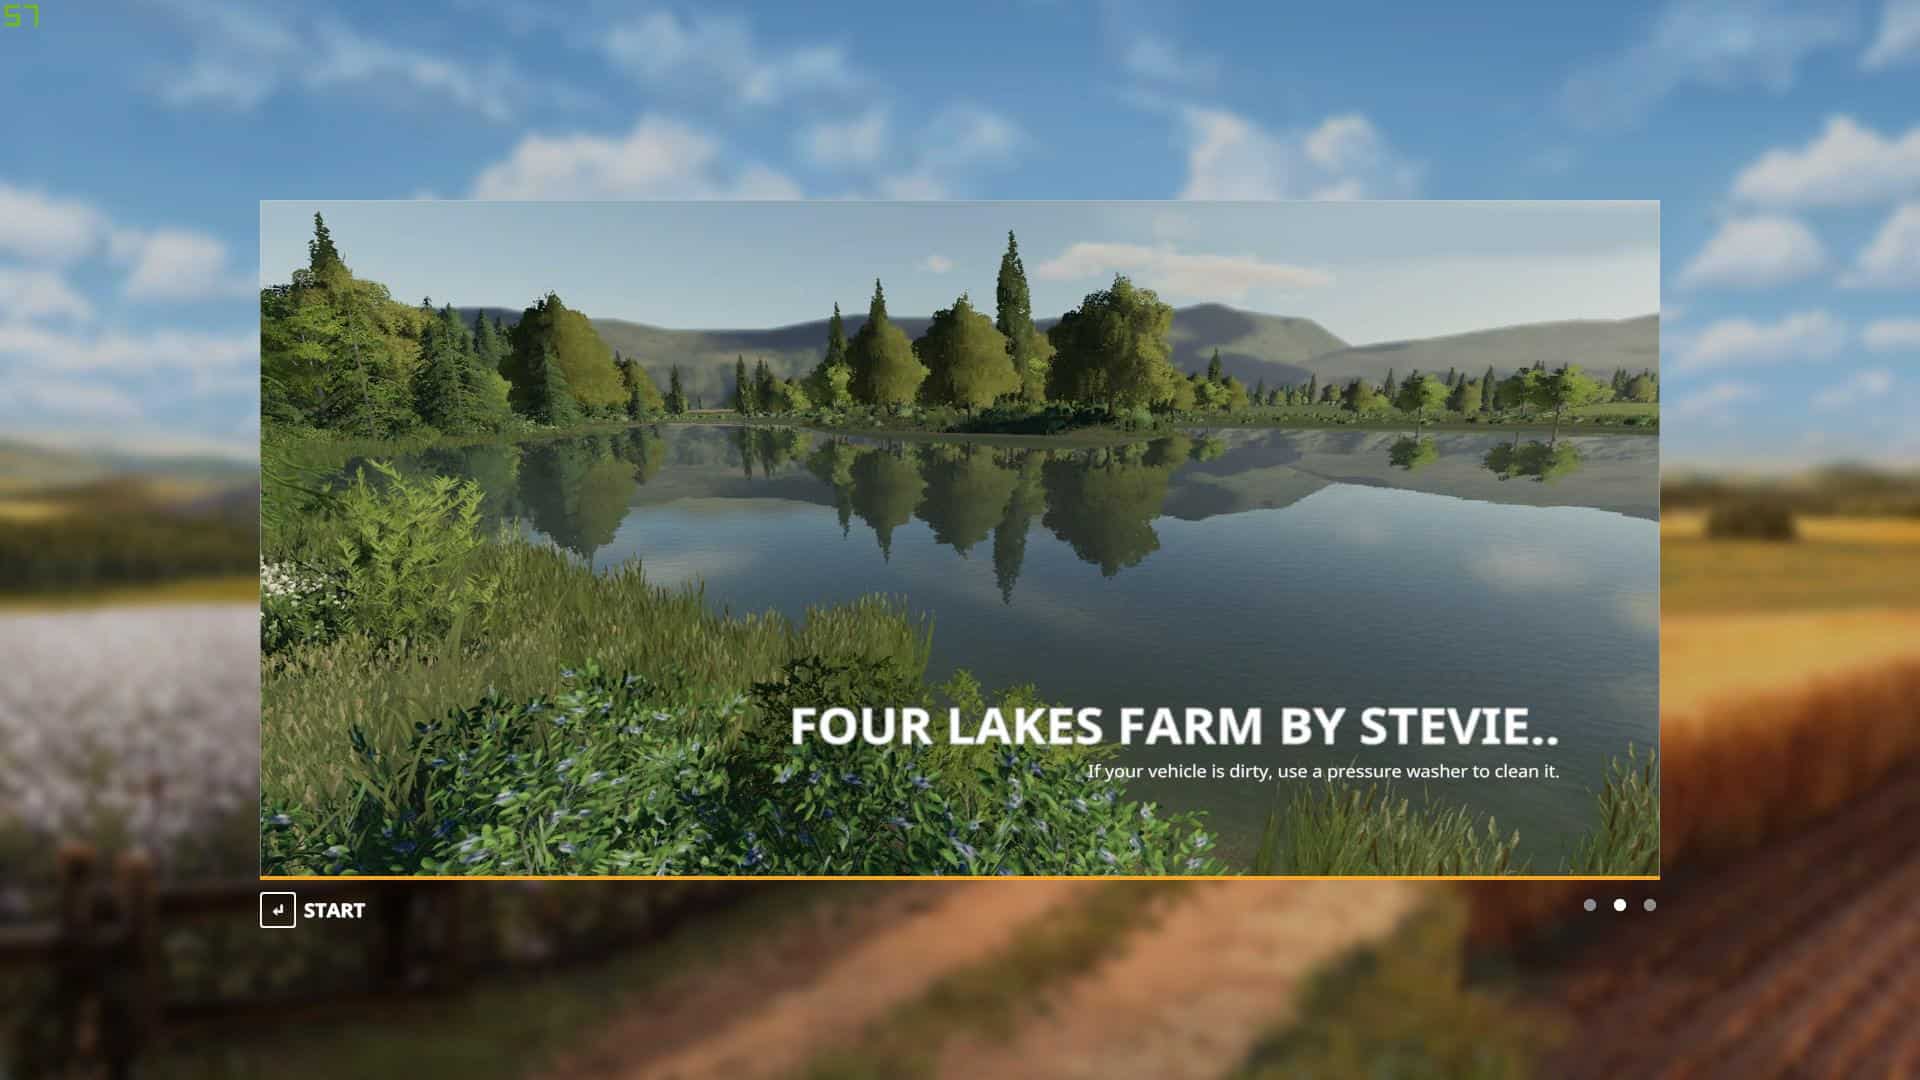 Fs19 Fs19 Four Lakes Farm By Stevie Fs 19 Maps Mod Download